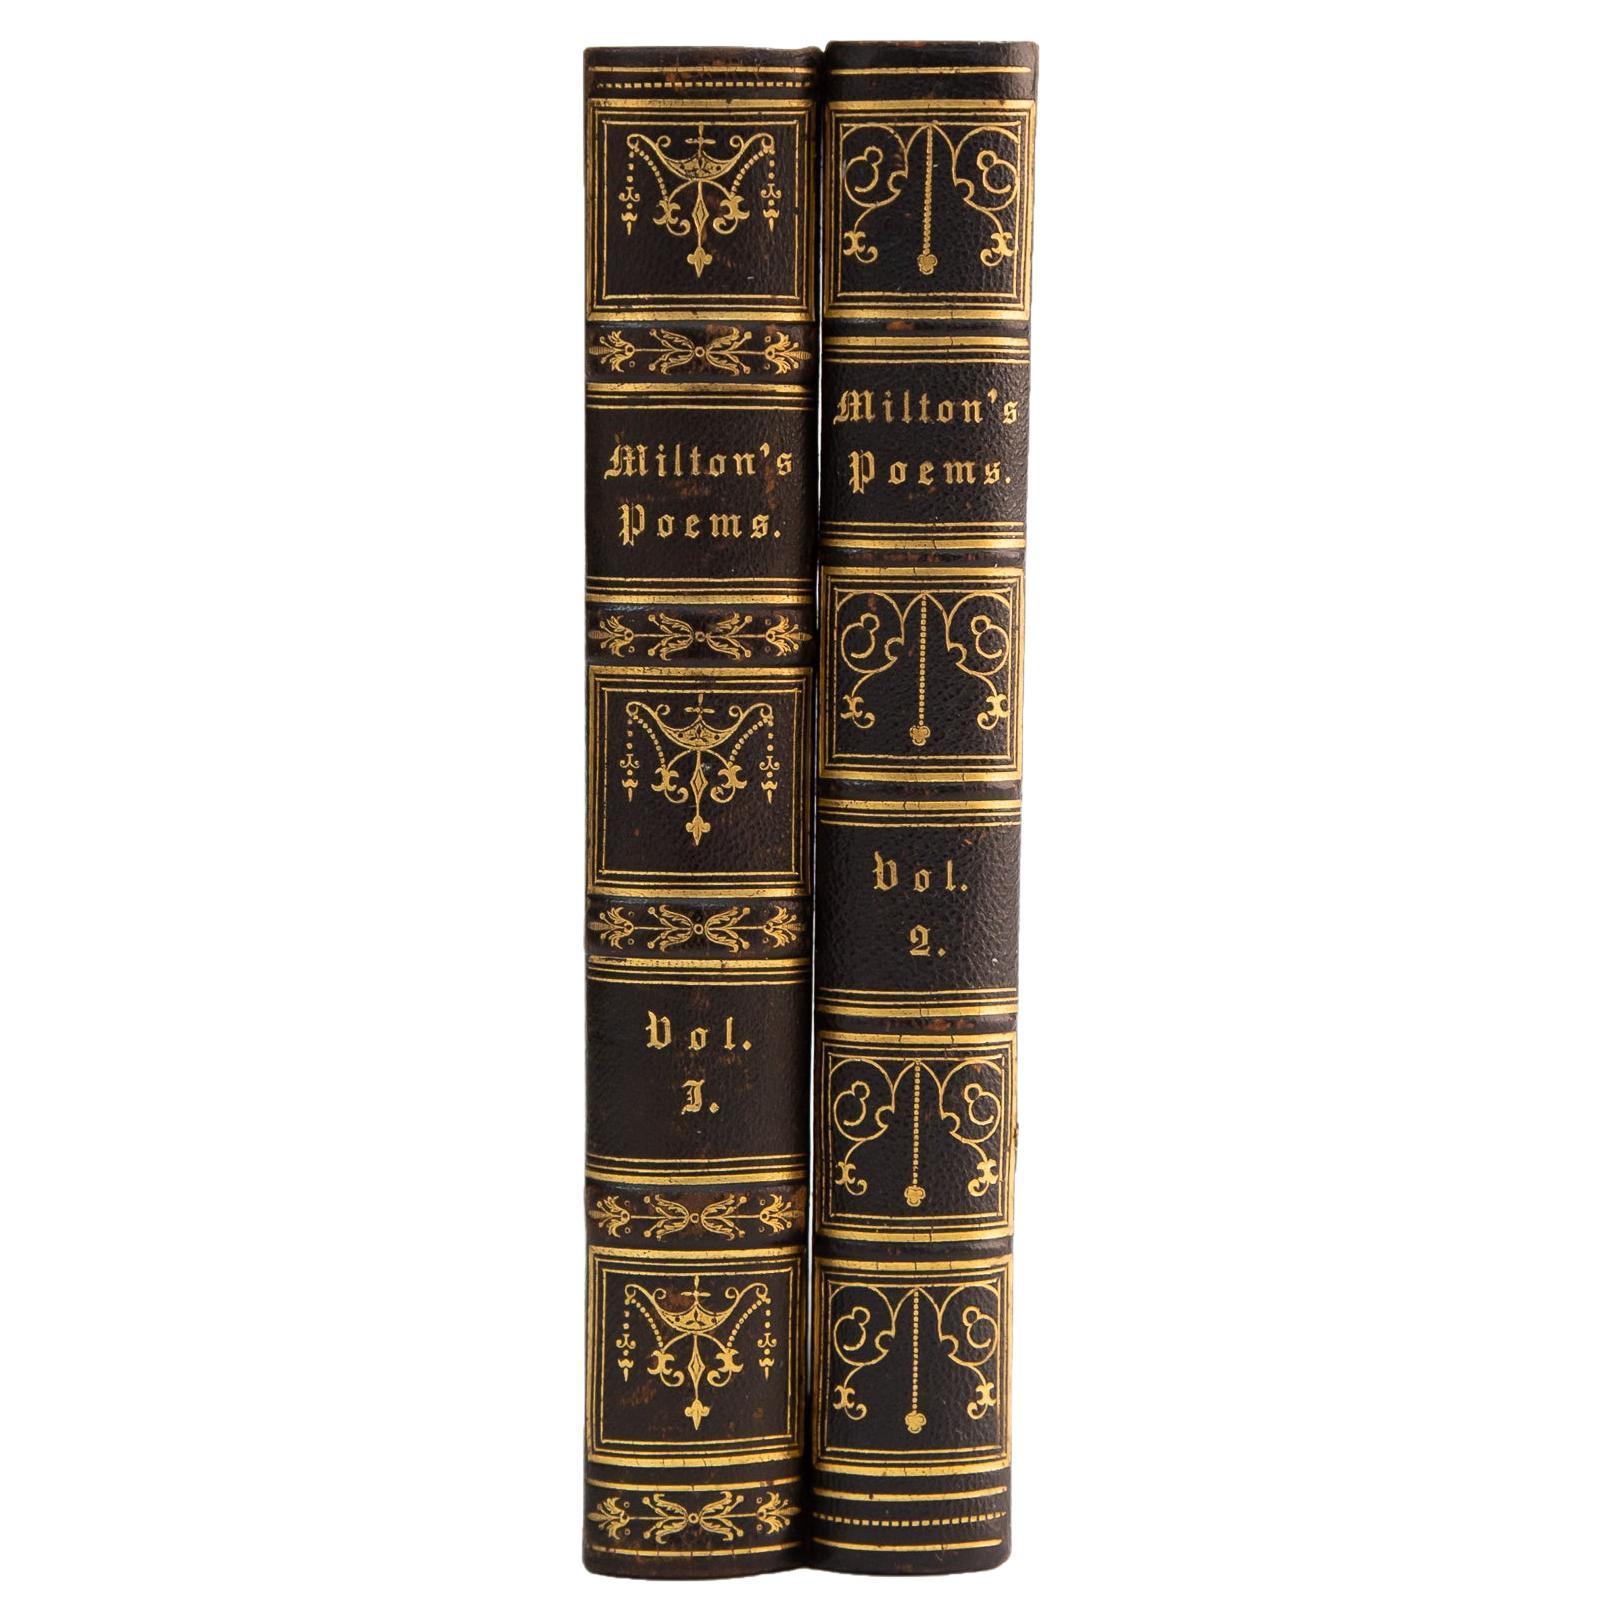 2 Volumes. John Milton, the Poetical Works